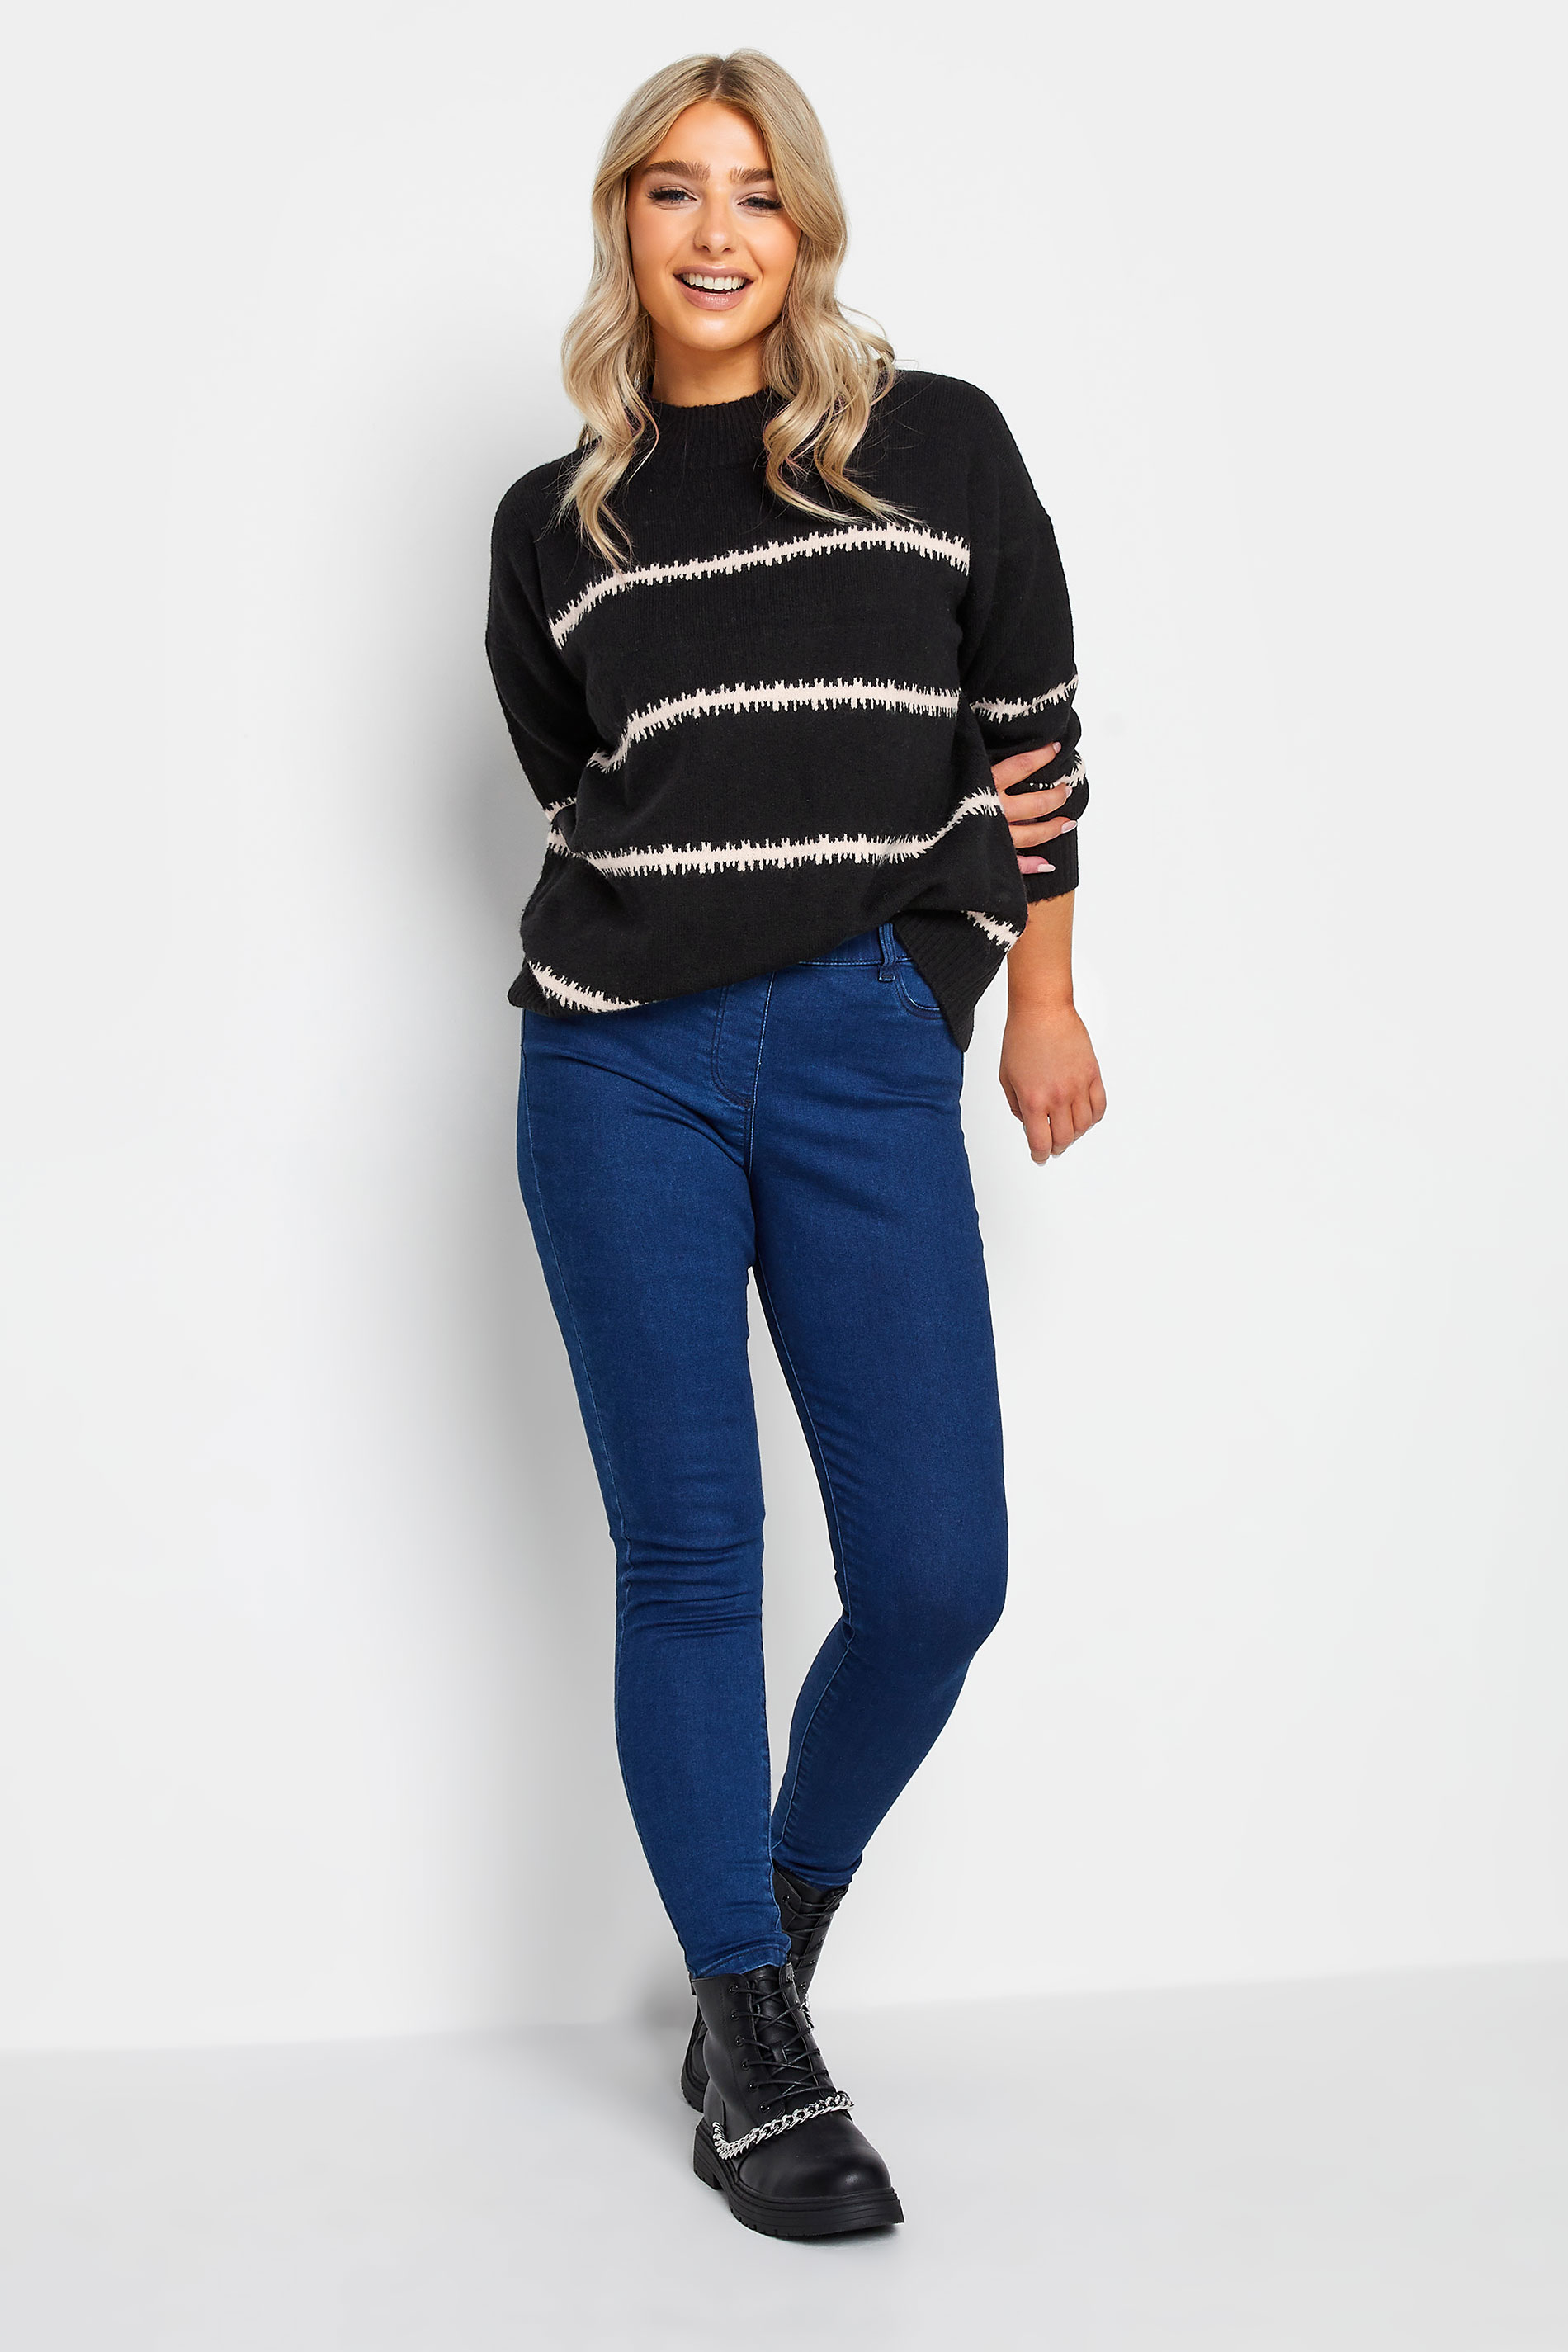 M&Co Black Blurred Stripe Jumper | M&Co 2